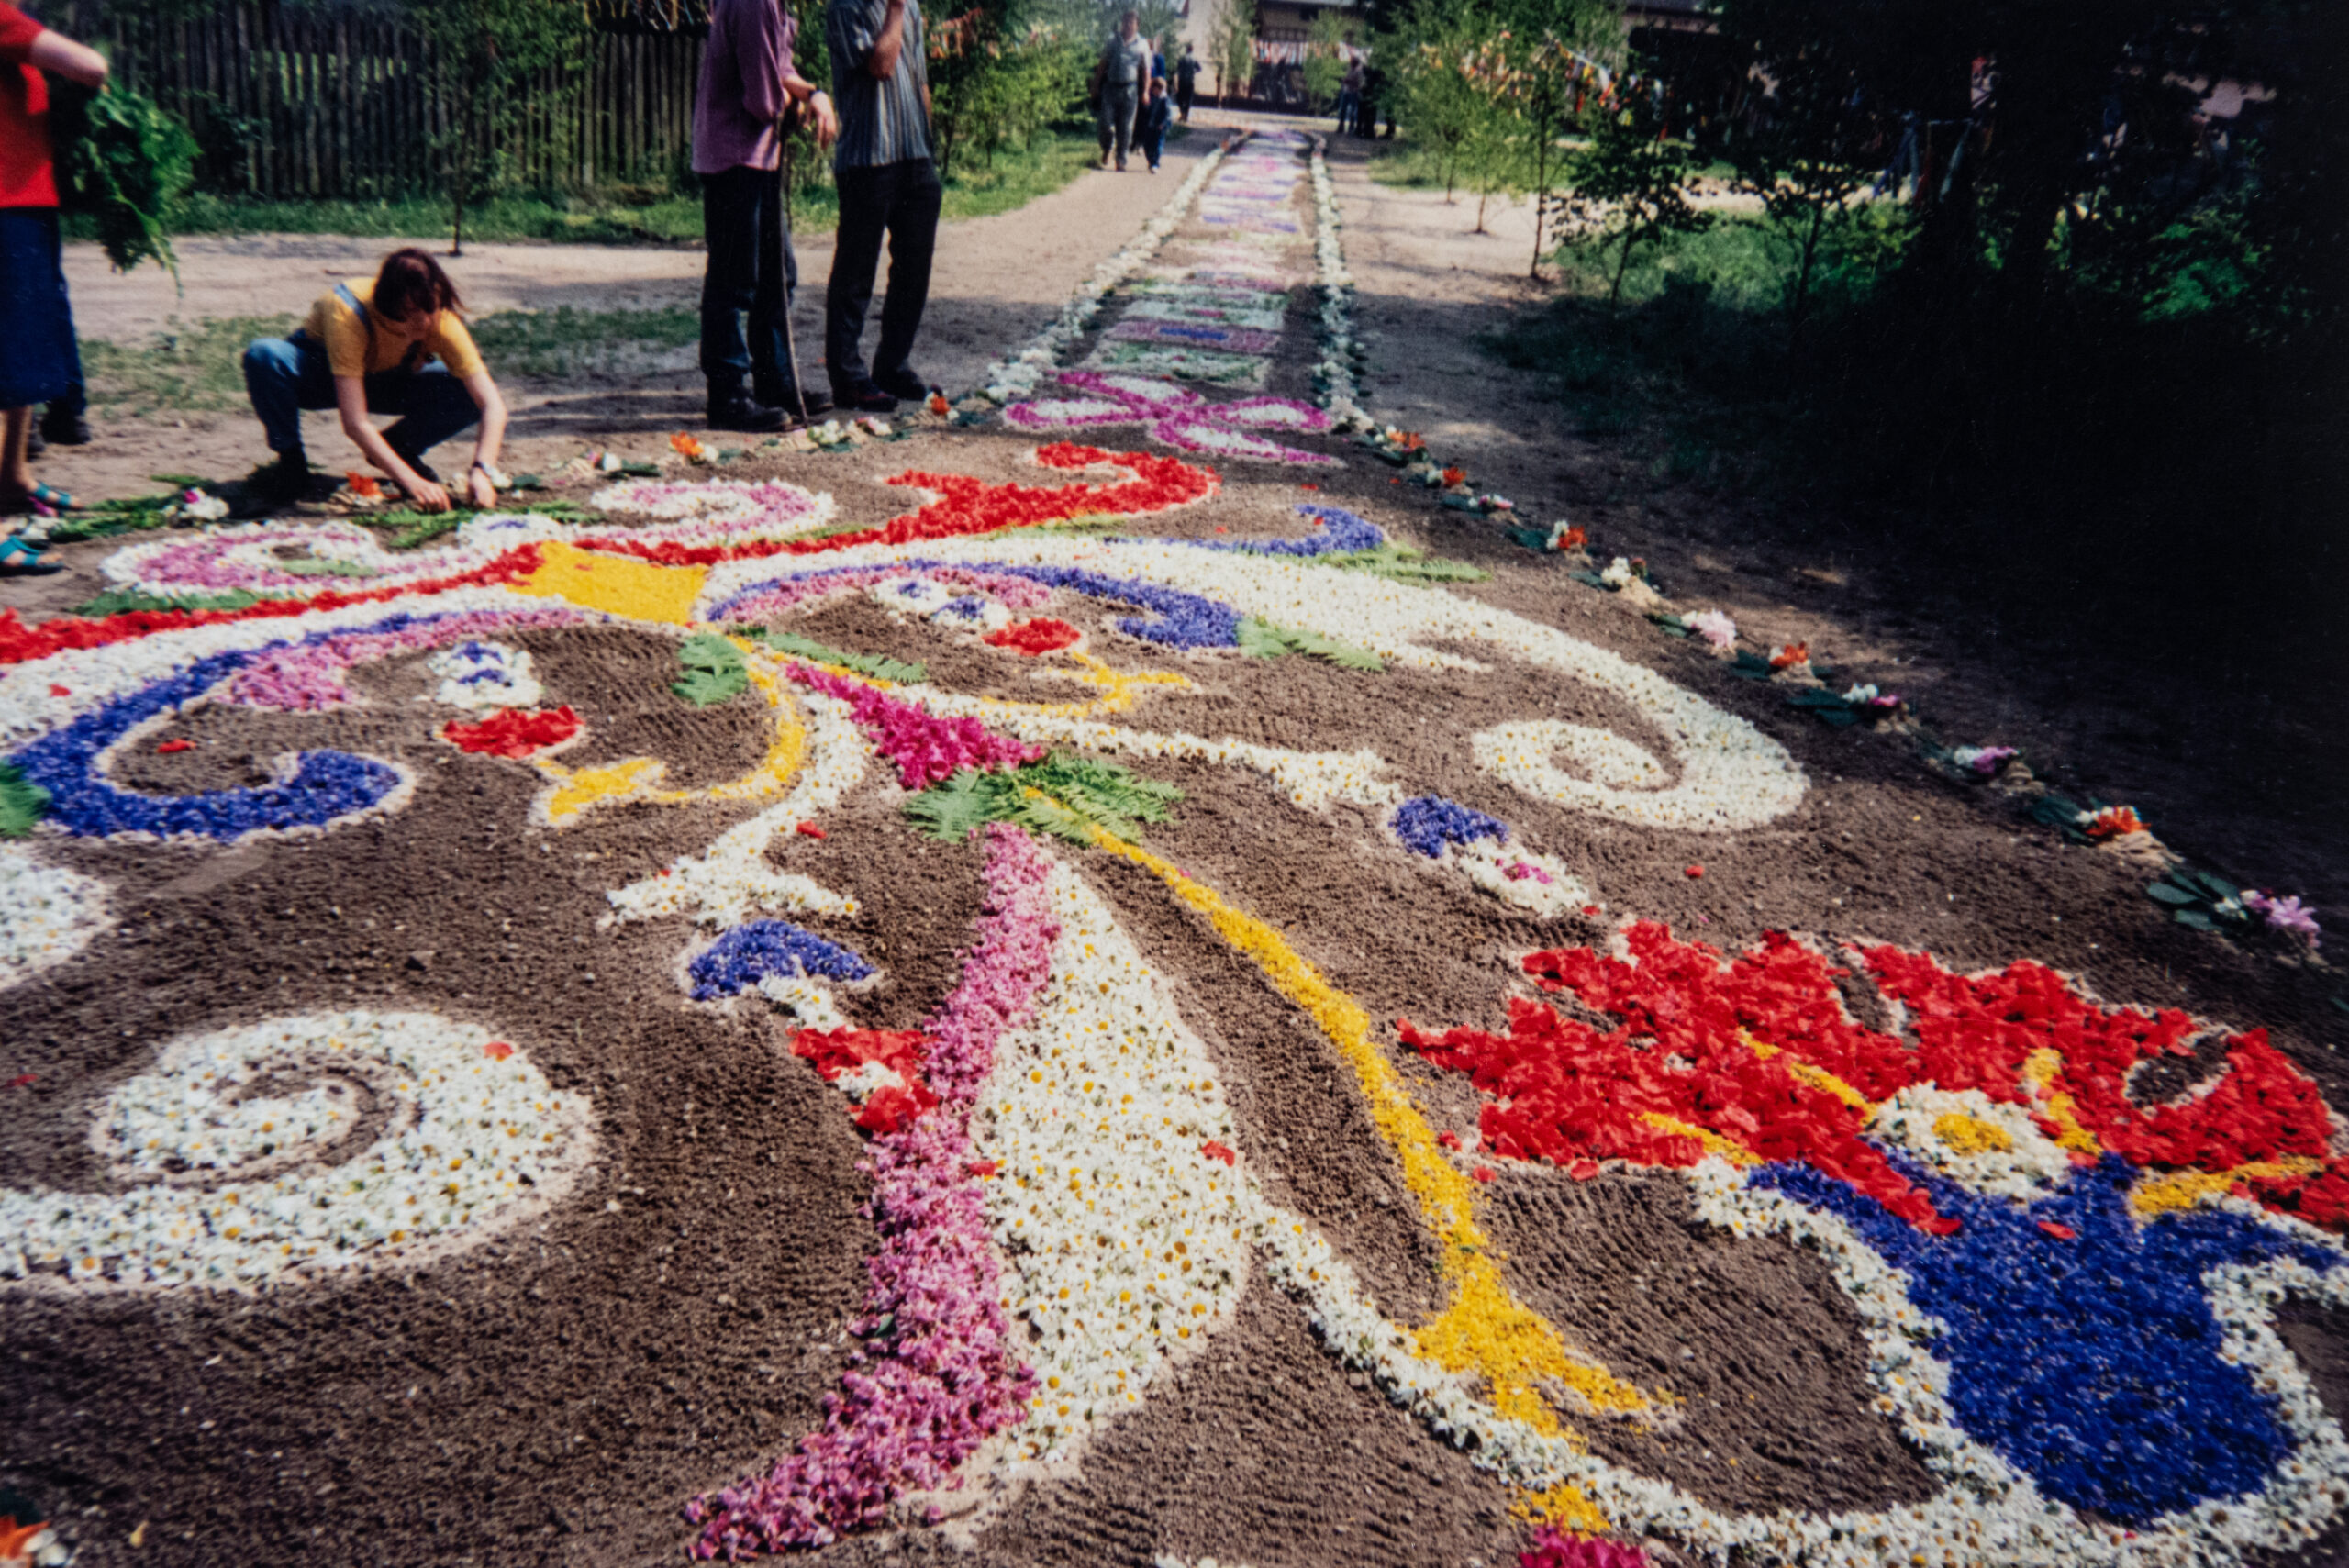 Wielokolorowy dywan kwiatowy złożony z wzorów roślinnych i geometrycznych. Dywan poszerza się zajmując teren całego placu. Układający ludzie i oglądający proces turyści.